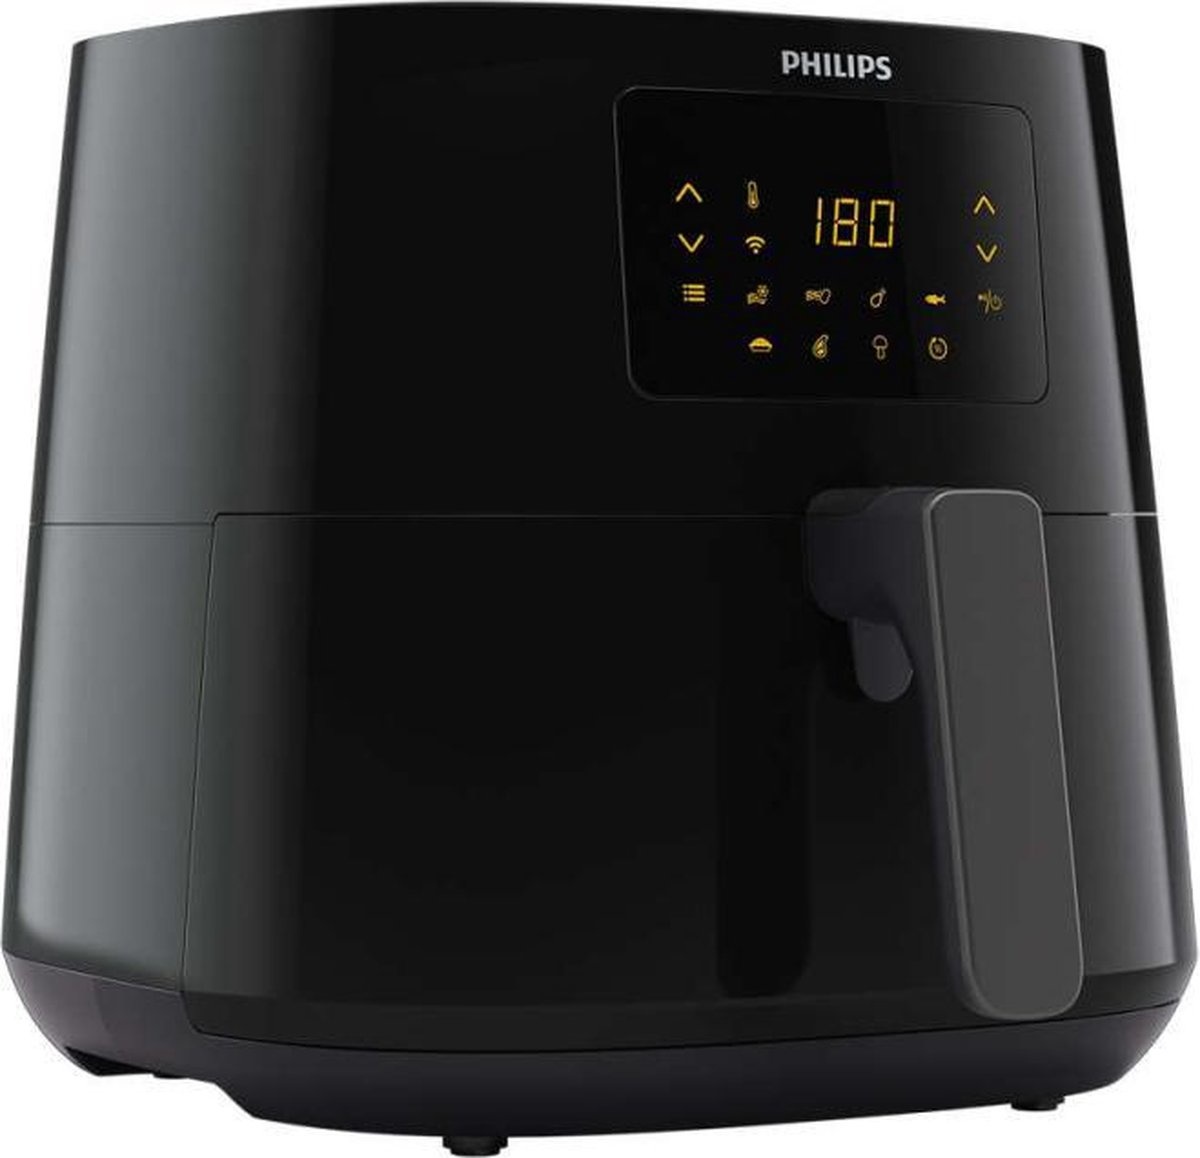 Maak leven naakt toevoegen aan Philips HD9280/70 Essential Connected Airfryer XL - Hetelucht friteuse -  PIEST.nl